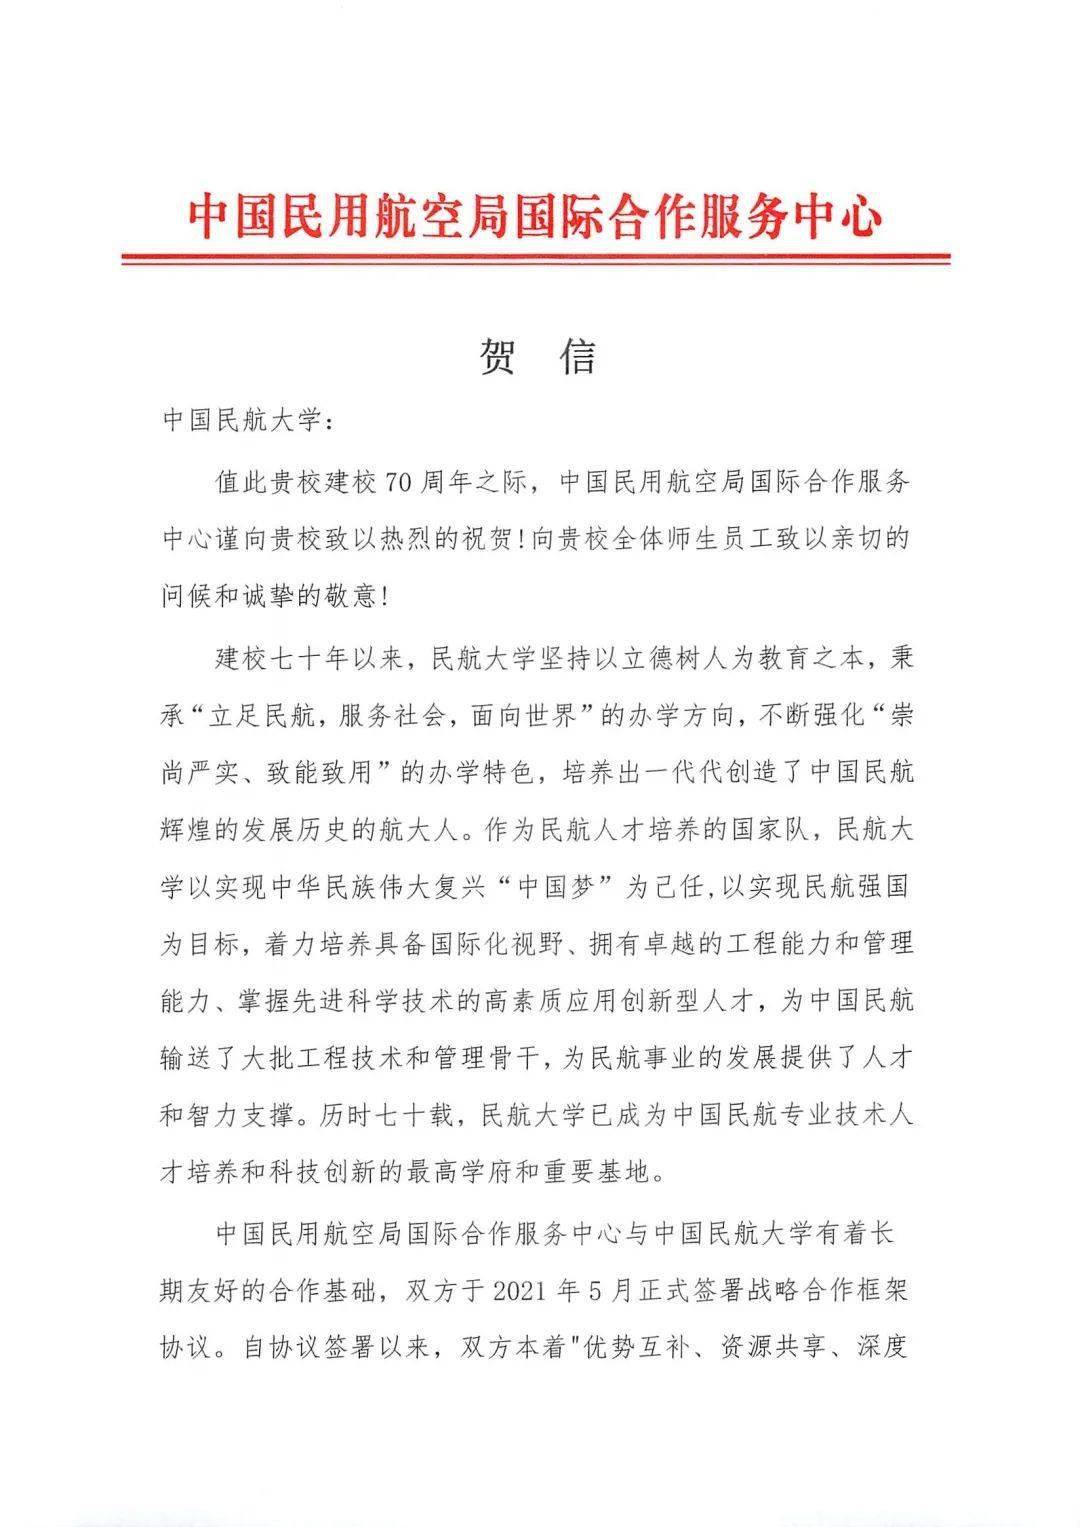 70周年校庆中国民用航空局国际合作服务中心发来贺信